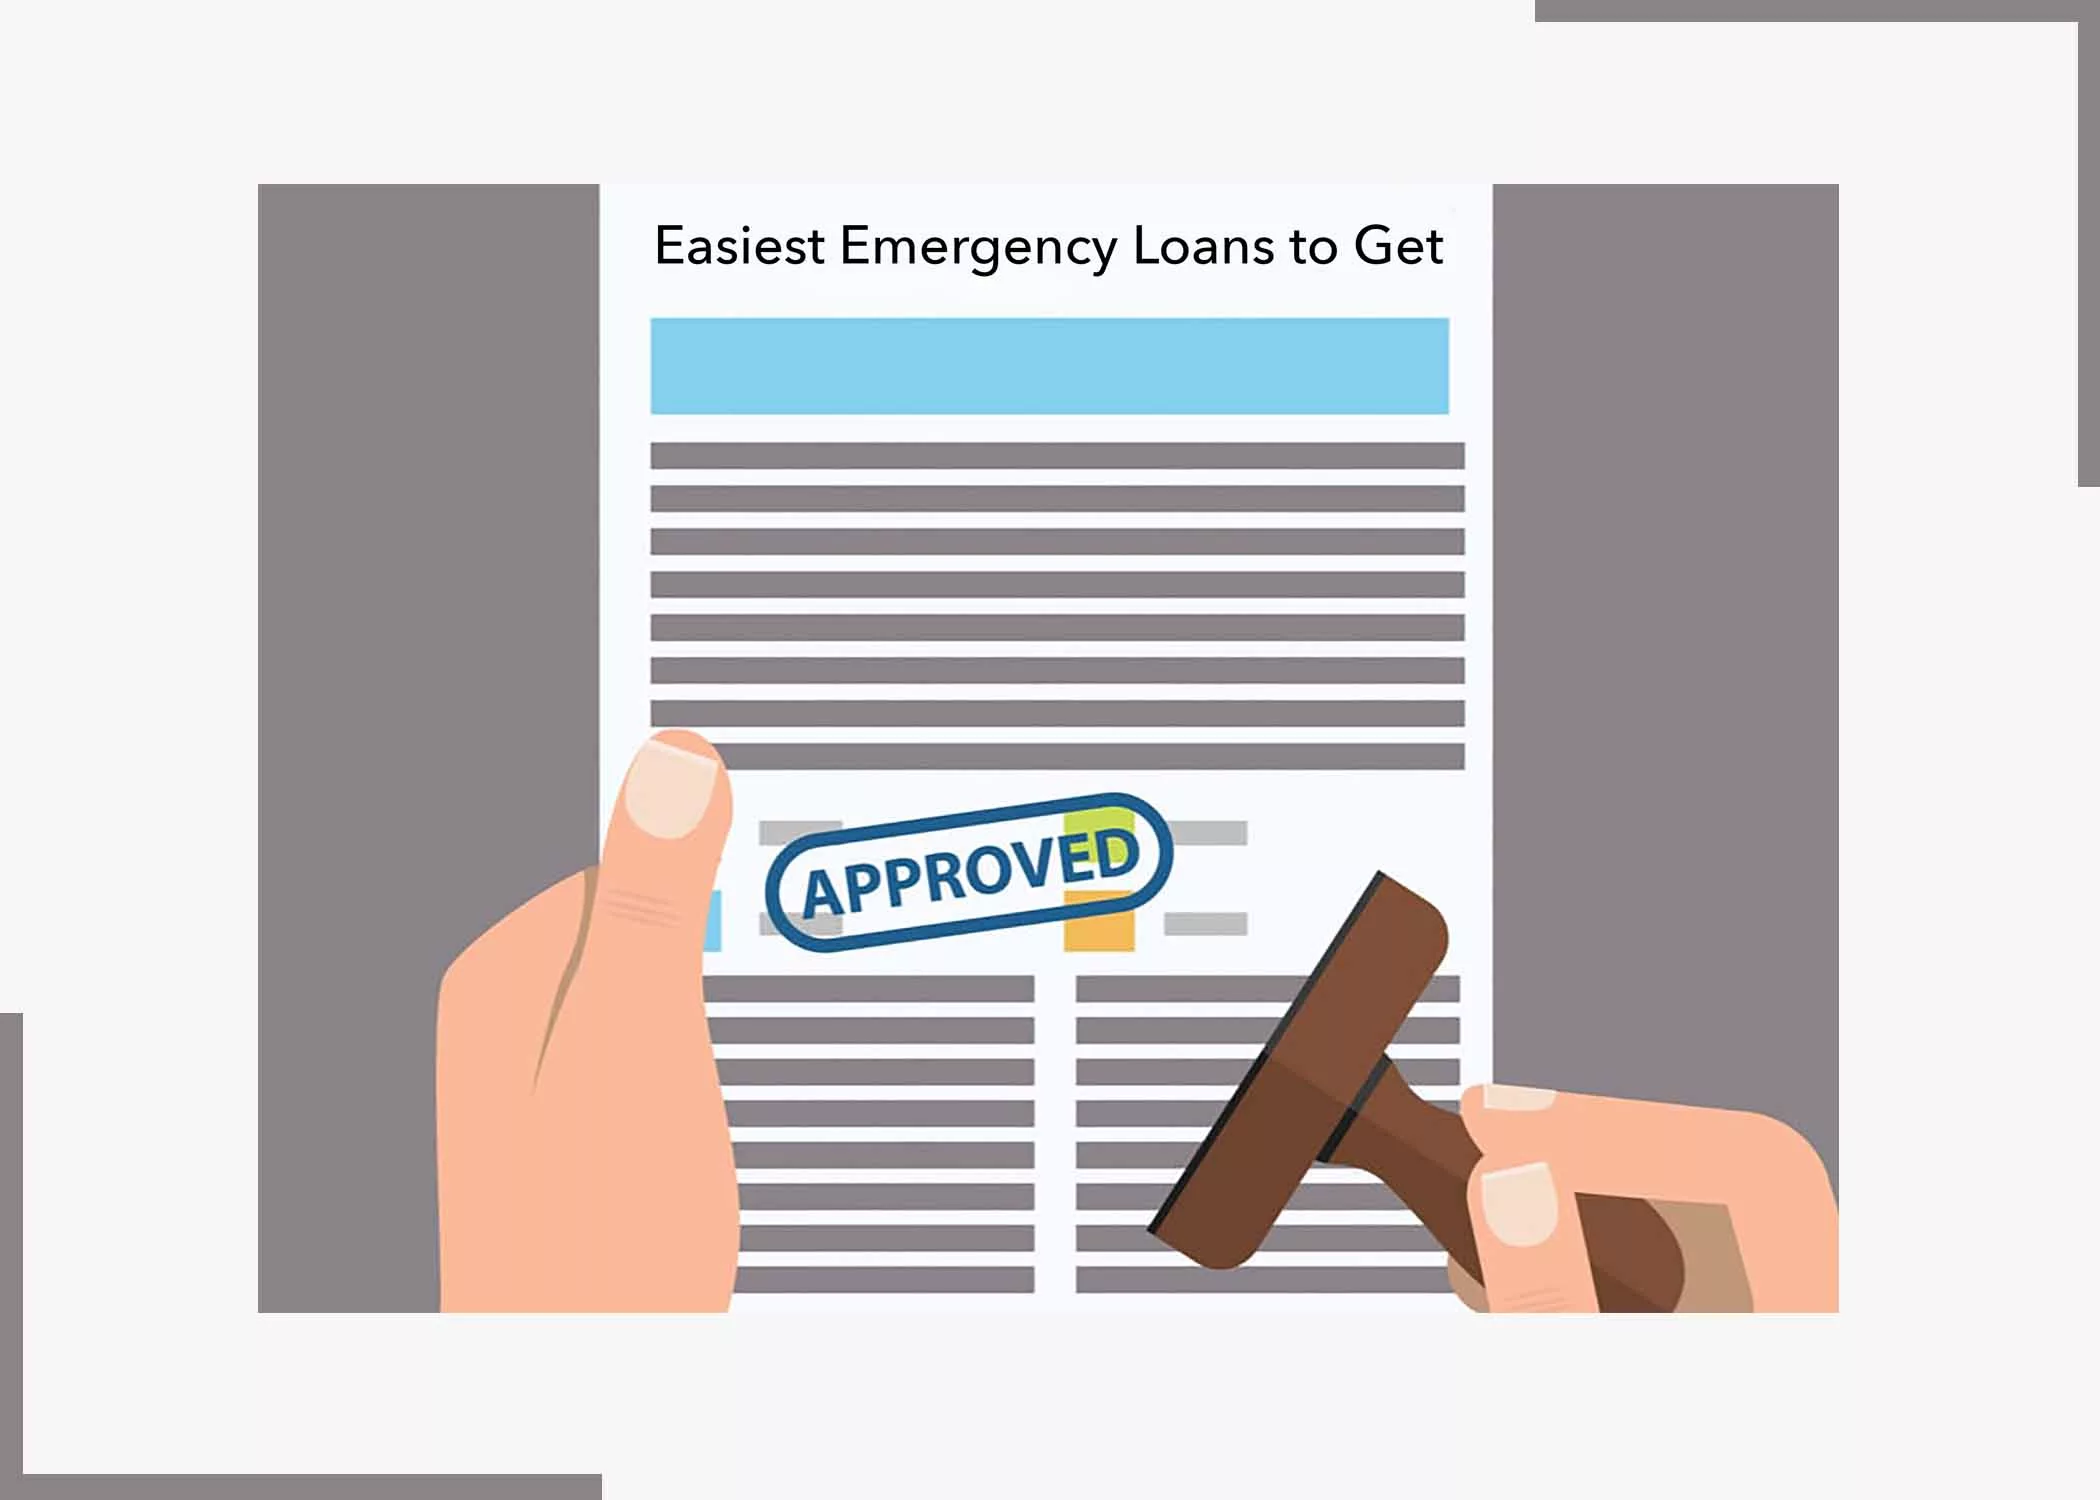 Easiest Emergency Loans to Get